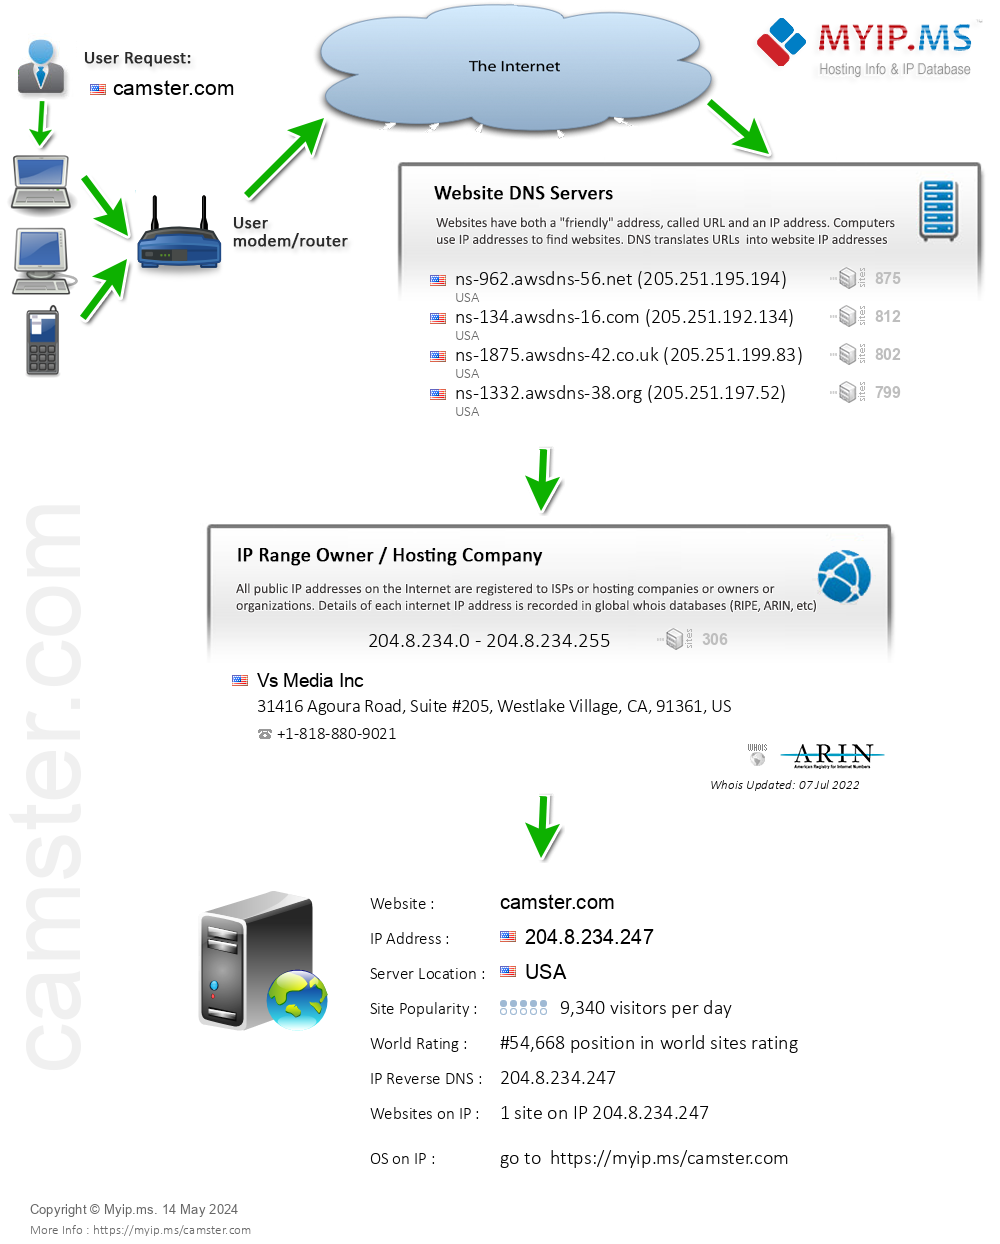 Camster.com - Website Hosting Visual IP Diagram